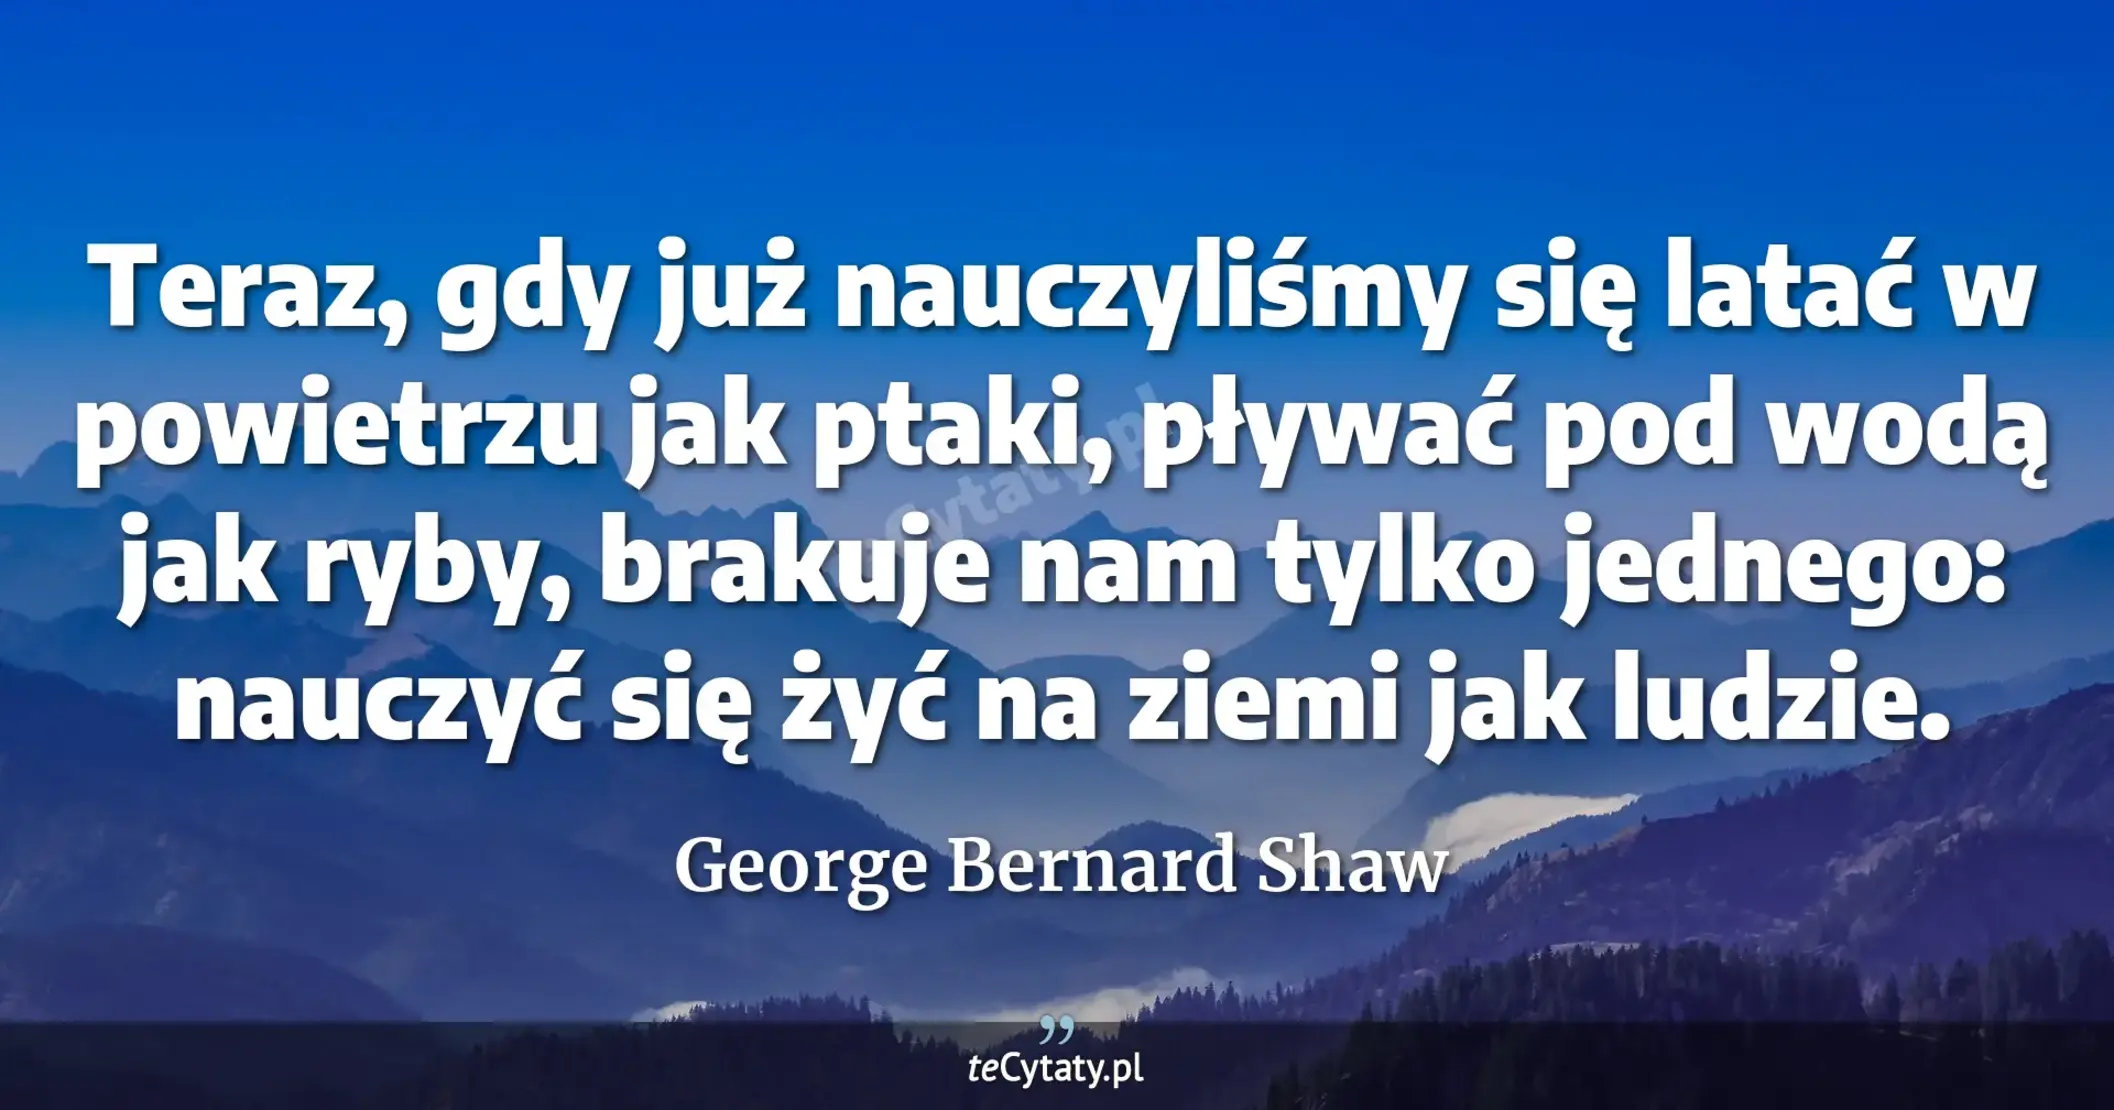 Teraz, gdy już nauczyliśmy się latać w powietrzu jak ptaki, pływać pod wodą jak ryby, brakuje nam tylko jednego: nauczyć się żyć na ziemi jak ludzie. - George Bernard Shaw